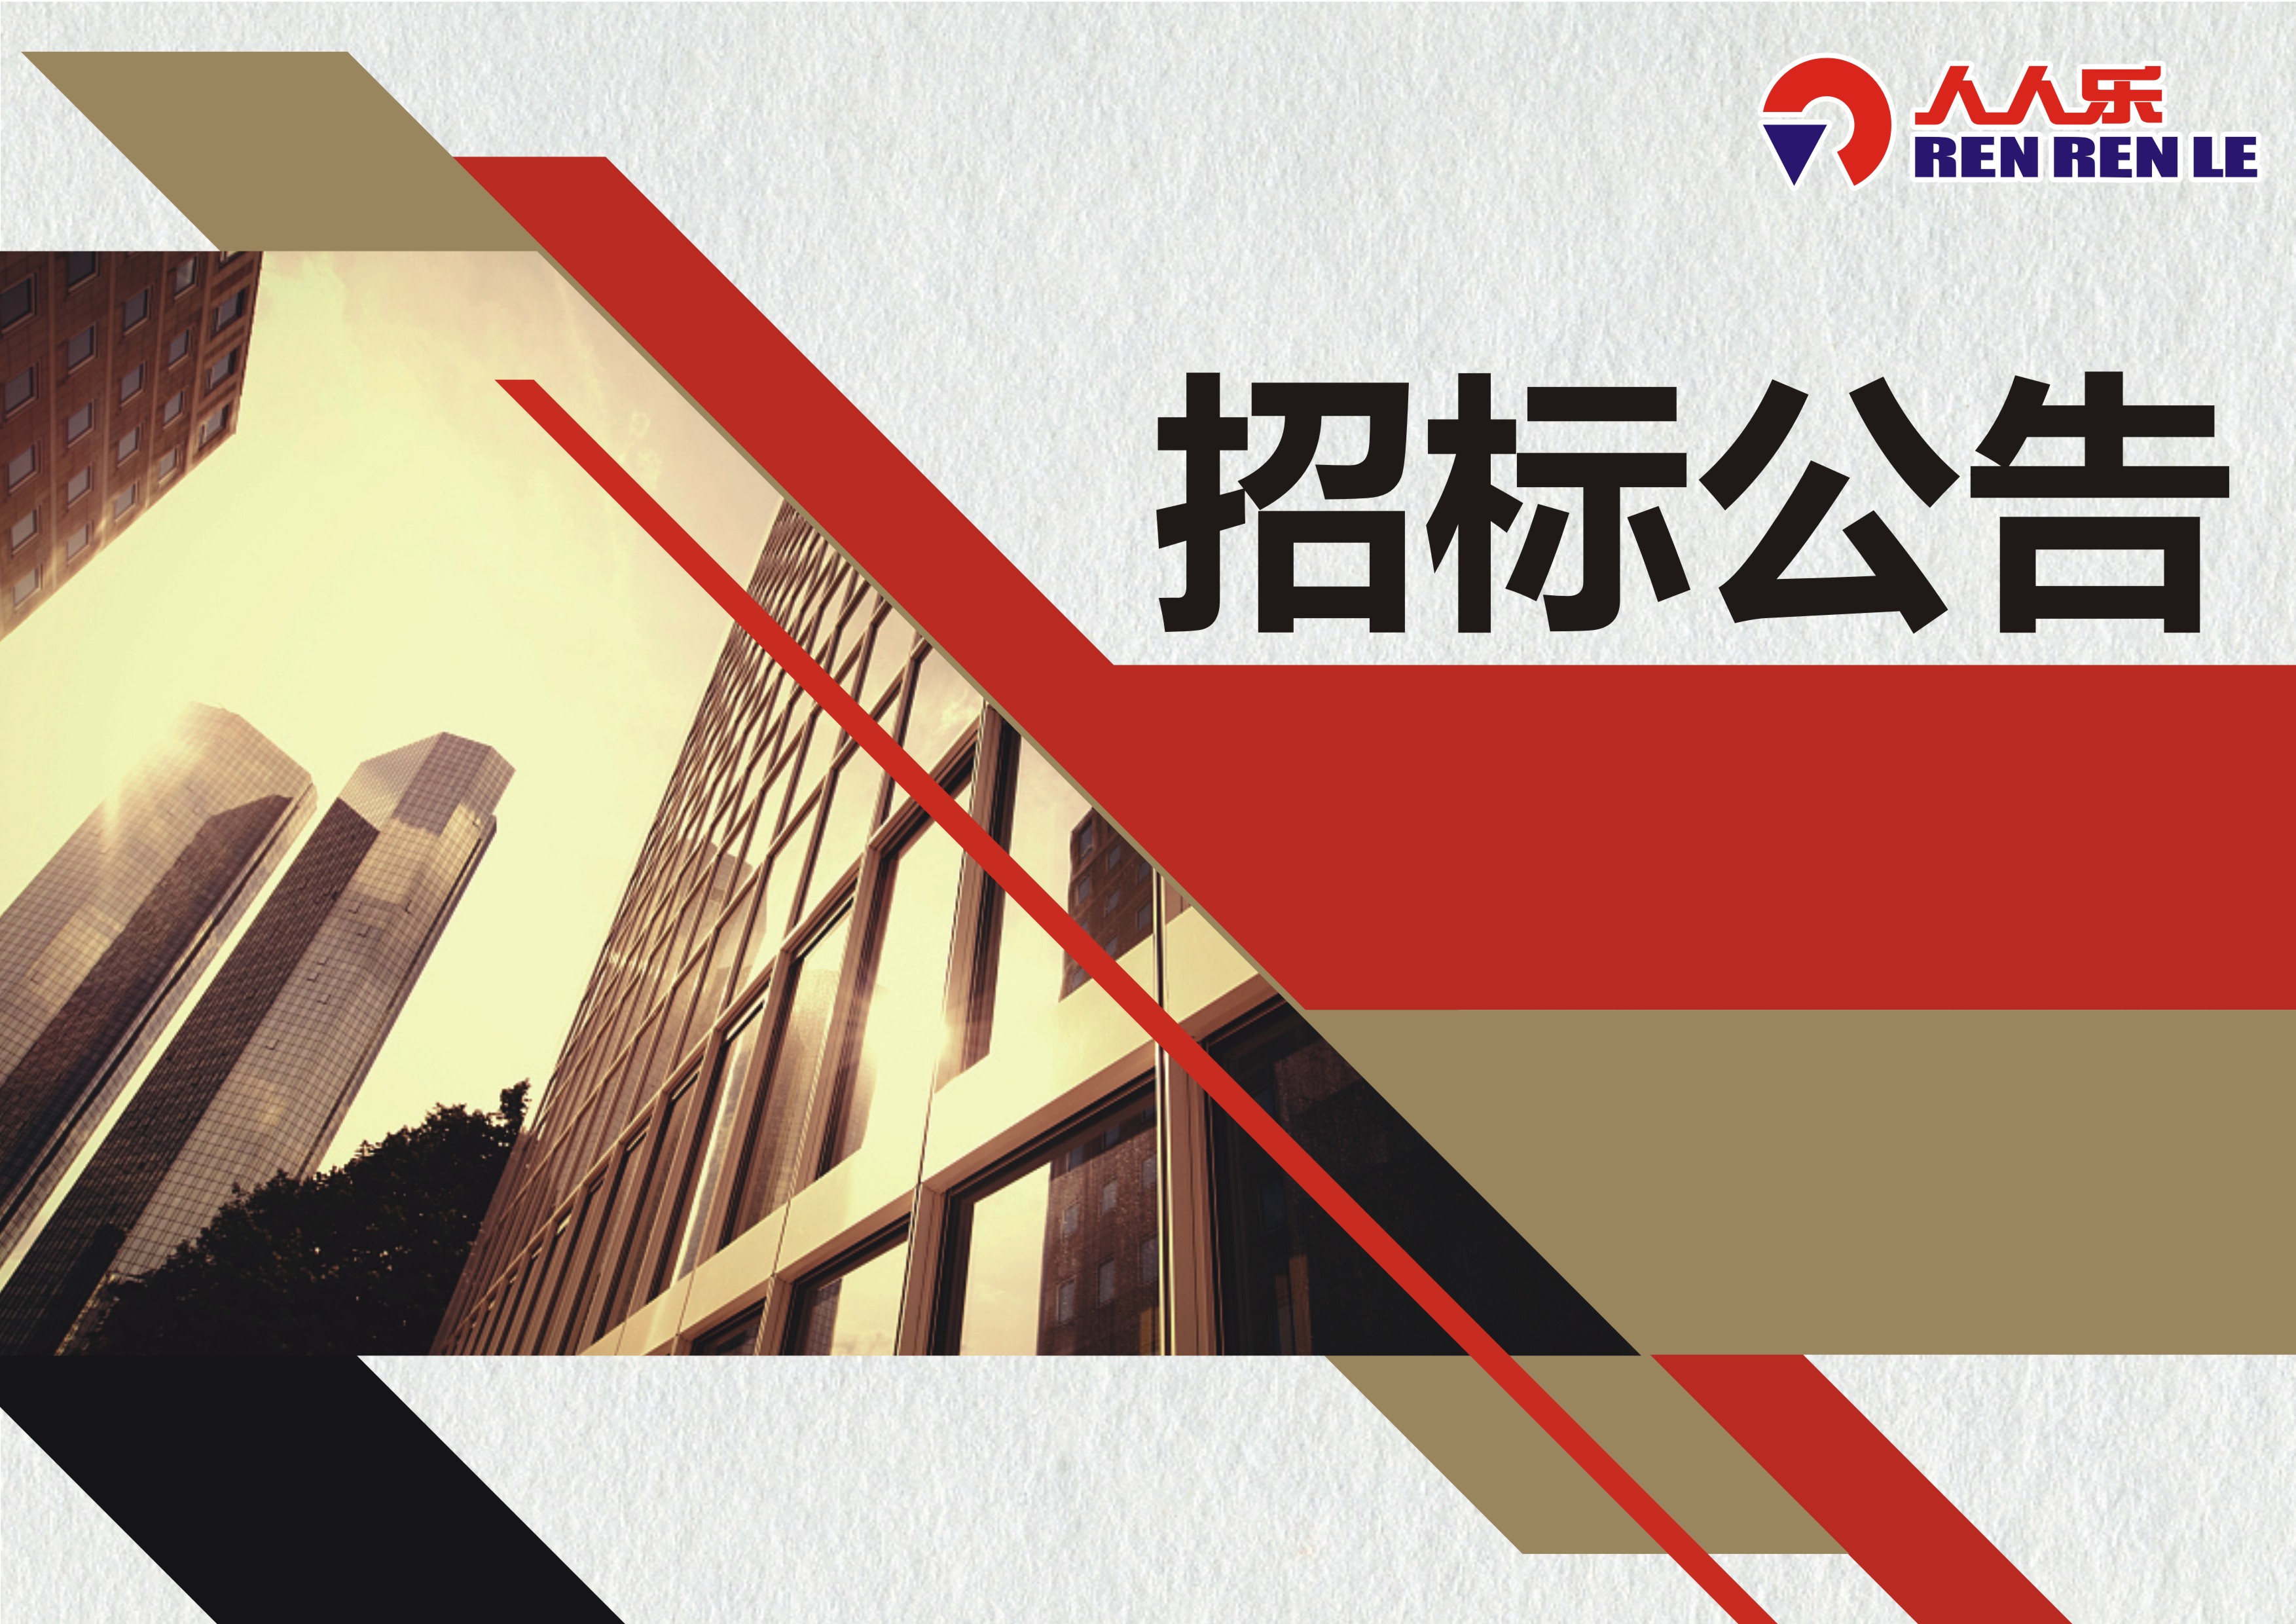 天津市人人乐商业有限公司对消防系统维保招标公告